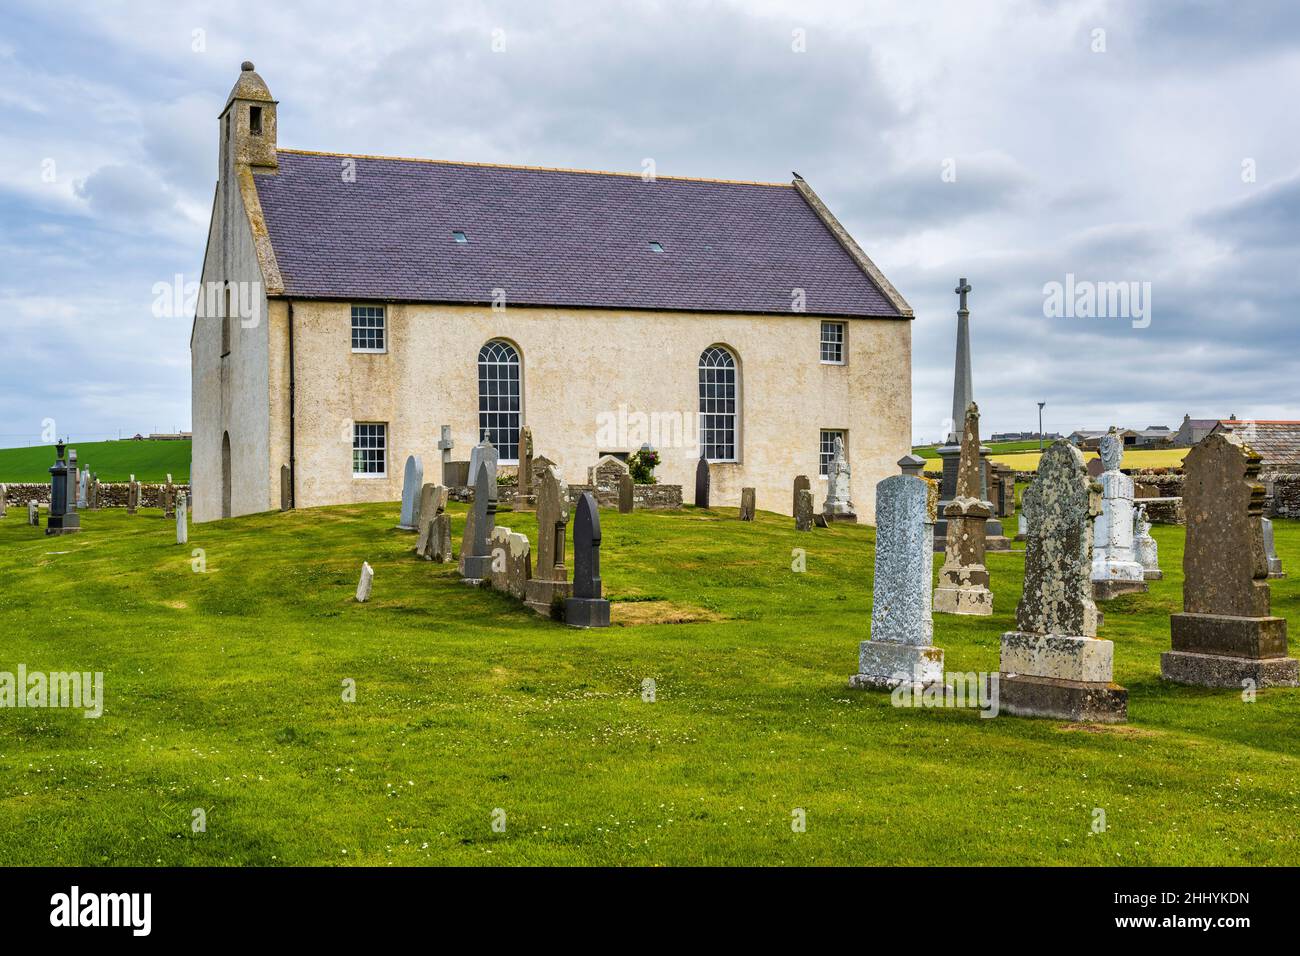 Restauration du Kirk de St Peter, situé à côté de la baie de Skaill, près de Sandwick, sur le continent Orkney, en Écosse Banque D'Images